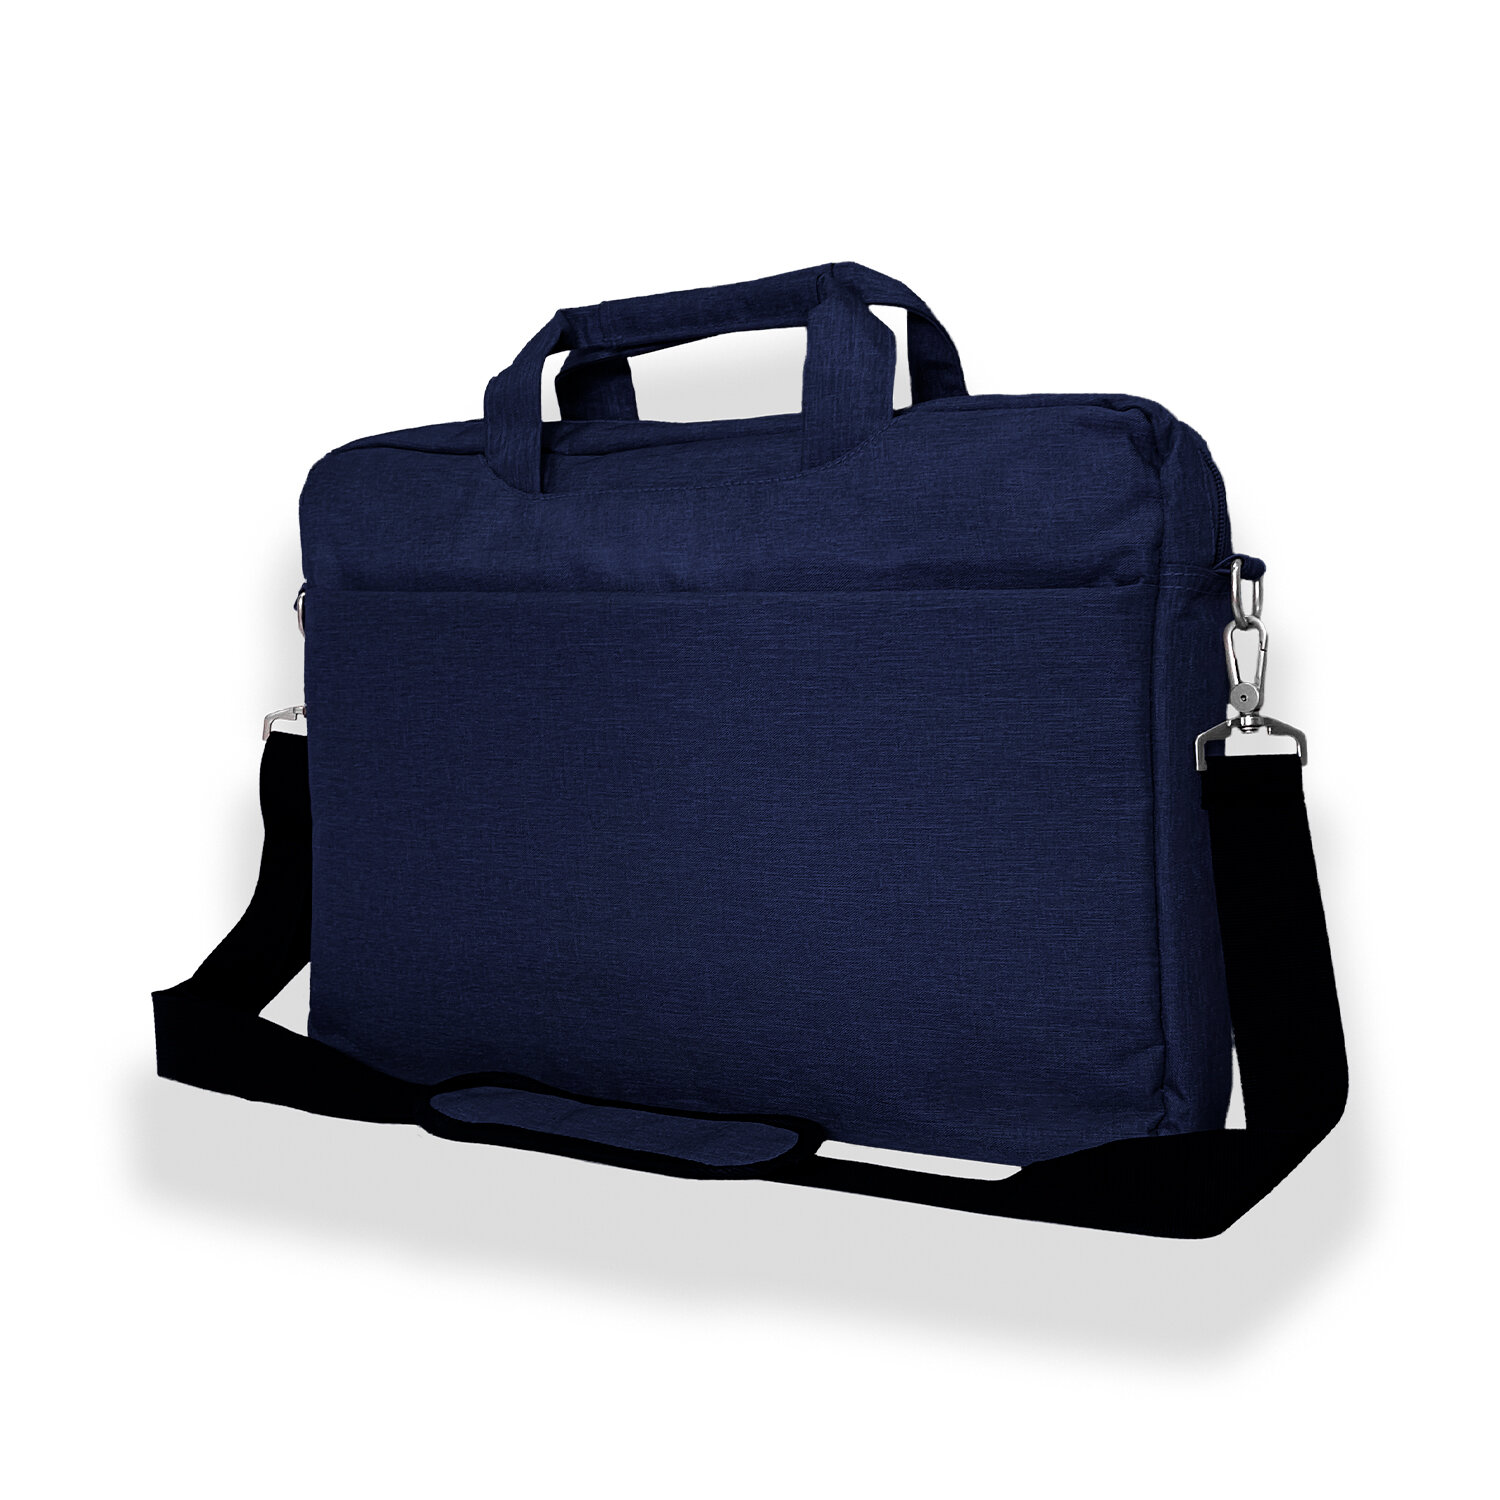 Сумка для ноутбука WorkBag, с защитой от воды, с креплением на чемодан, 15-17 дюймов, синий